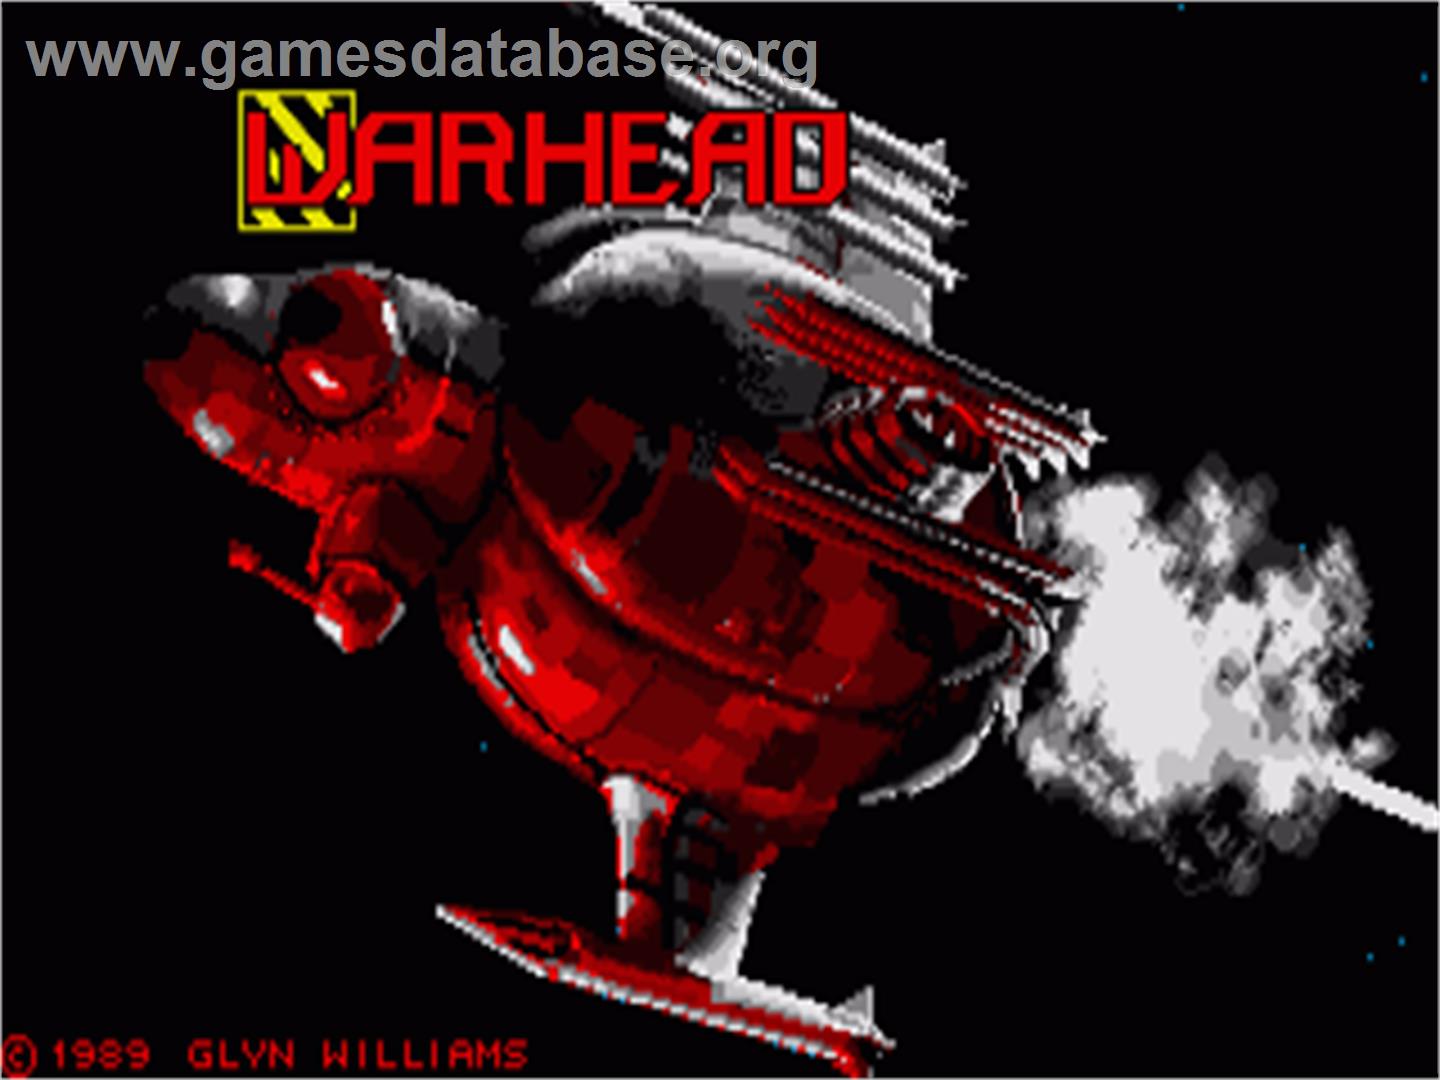 Warhead - Commodore Amiga - Artwork - Title Screen